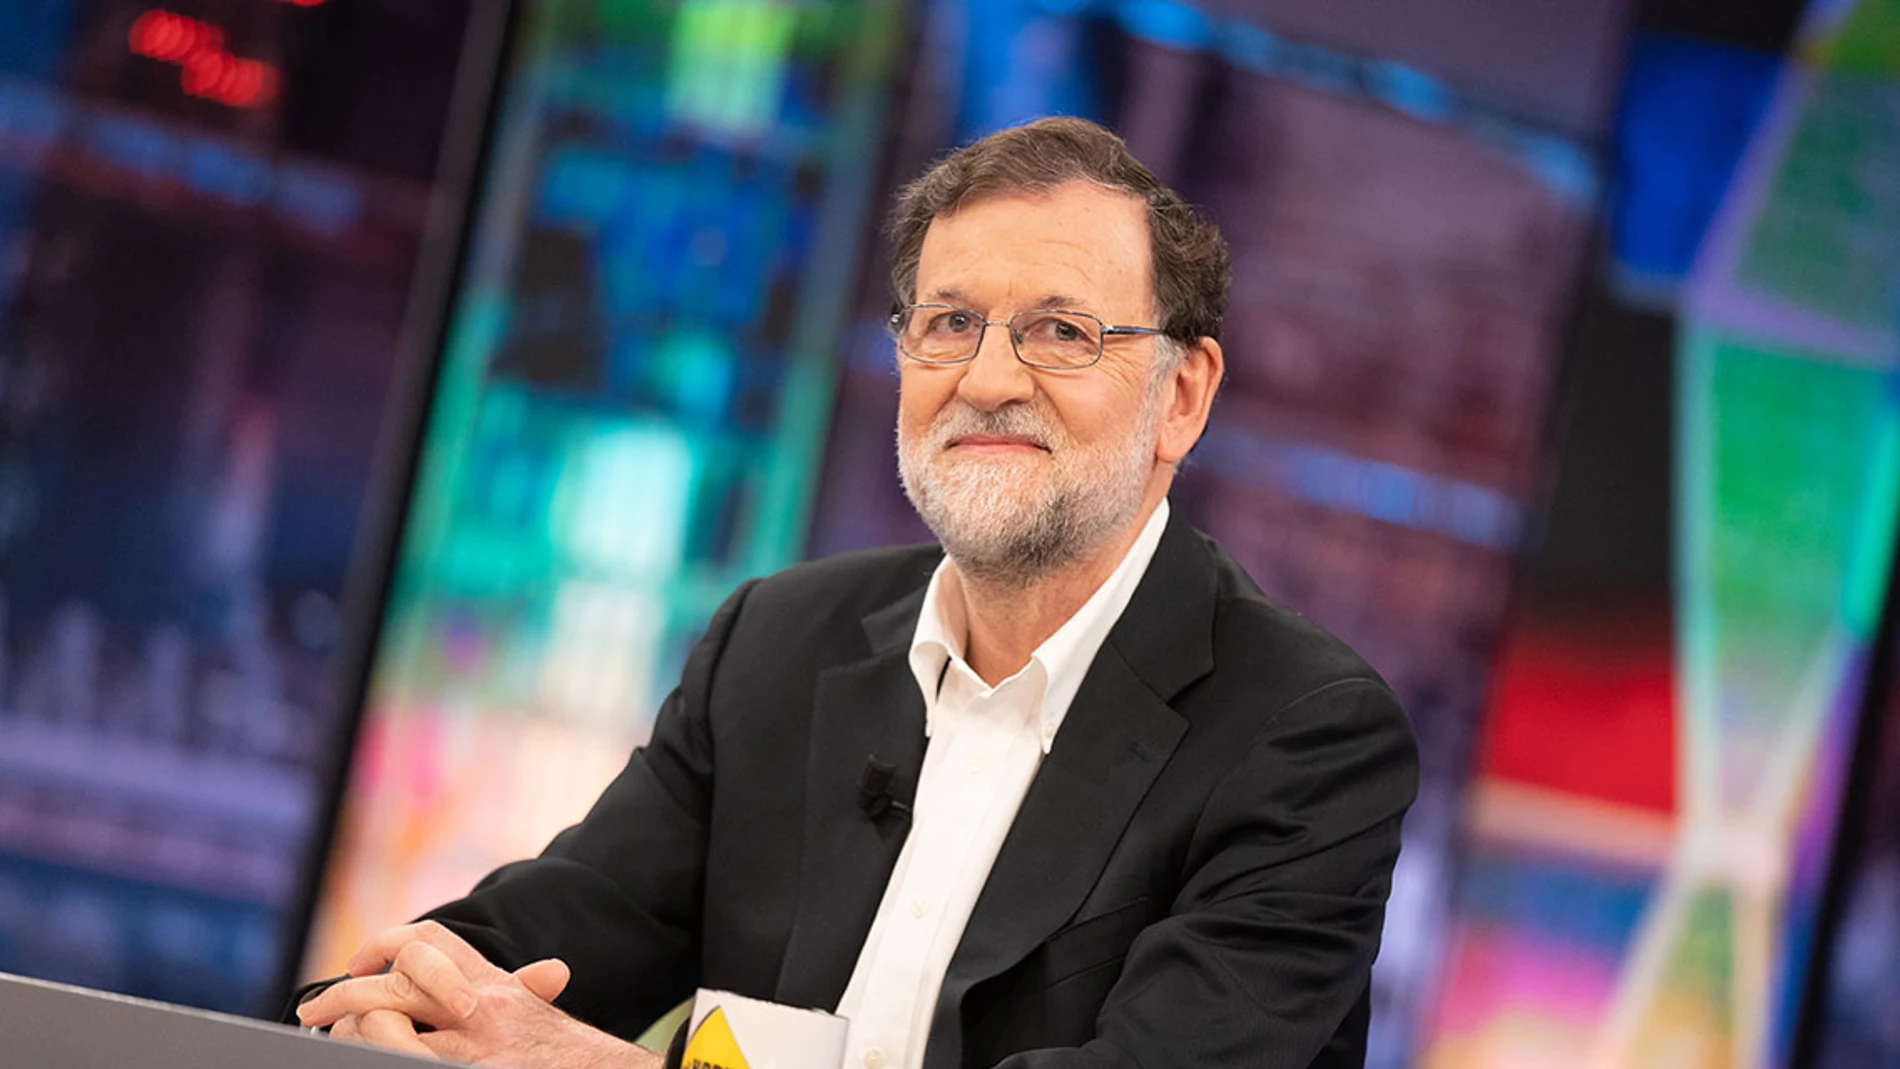 Entrevista completa - Mariano Rajoy